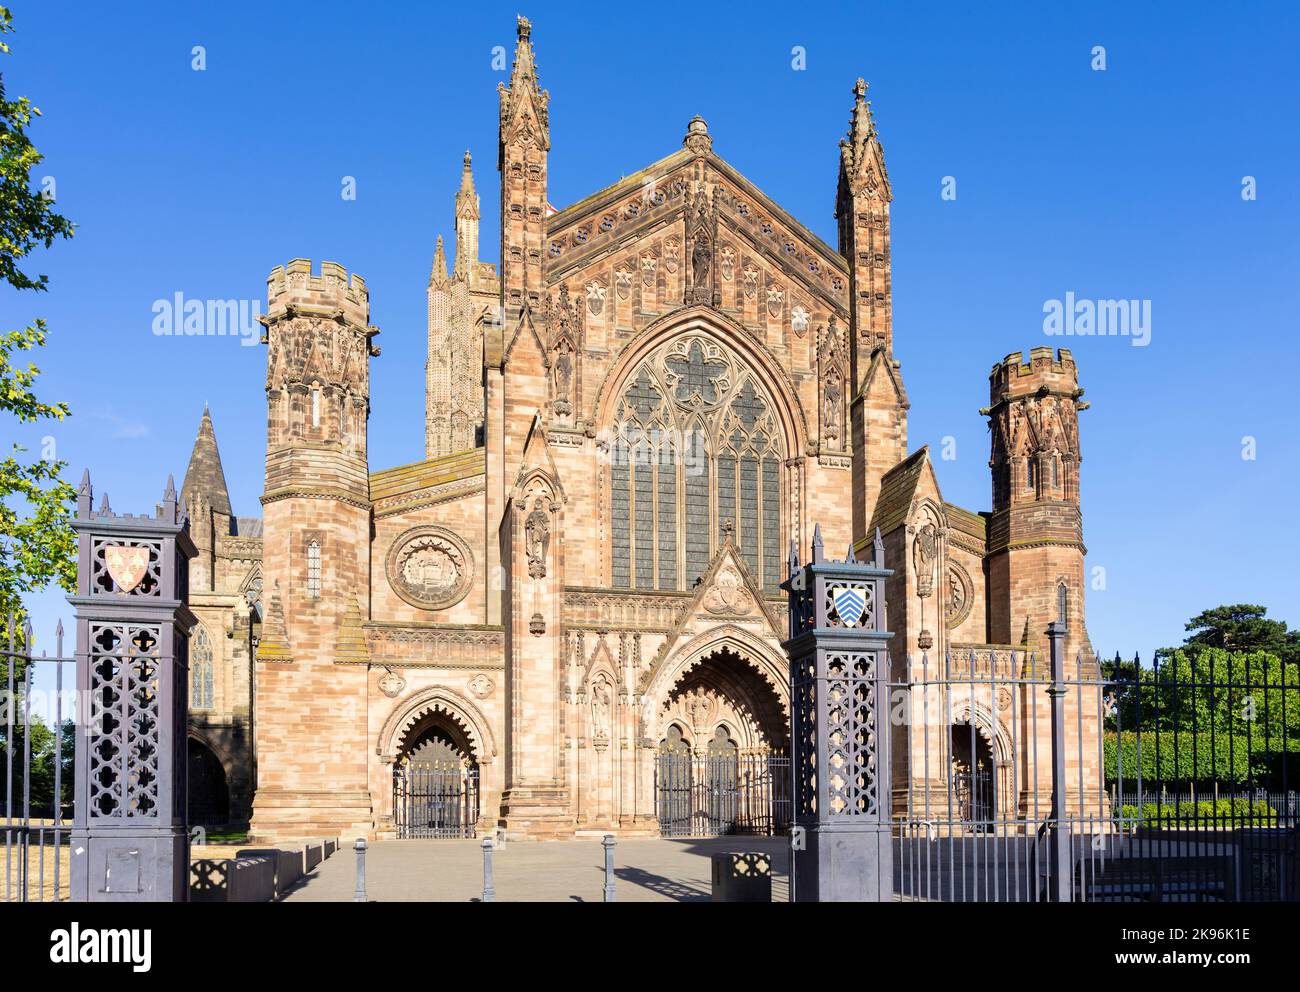 Cathédrale de Hereford ou cathédrale de Hereford de Saint Mary la Vierge et de Saint Ethelbert le Roi Hereford Herefordshire Angleterre GB Europe Banque D'Images